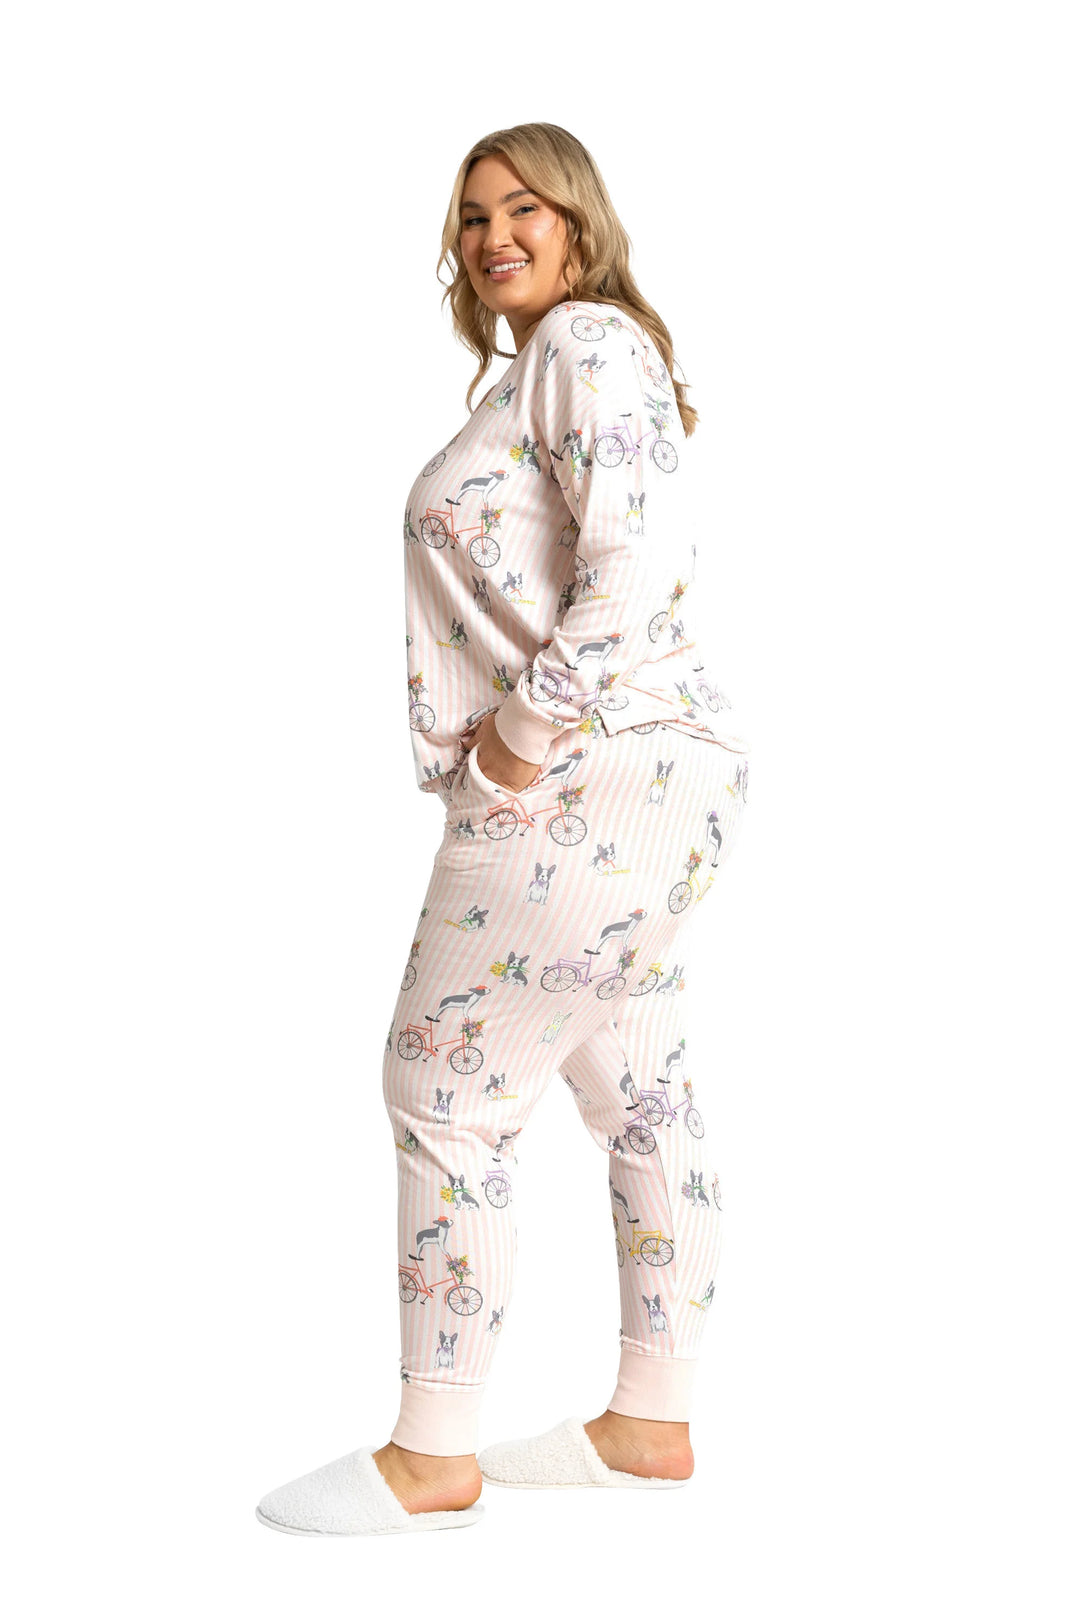 Souluna Cozy Tour de frenchie - Long sleeve Pyjamas sleepwear Souluna Sleepwear   